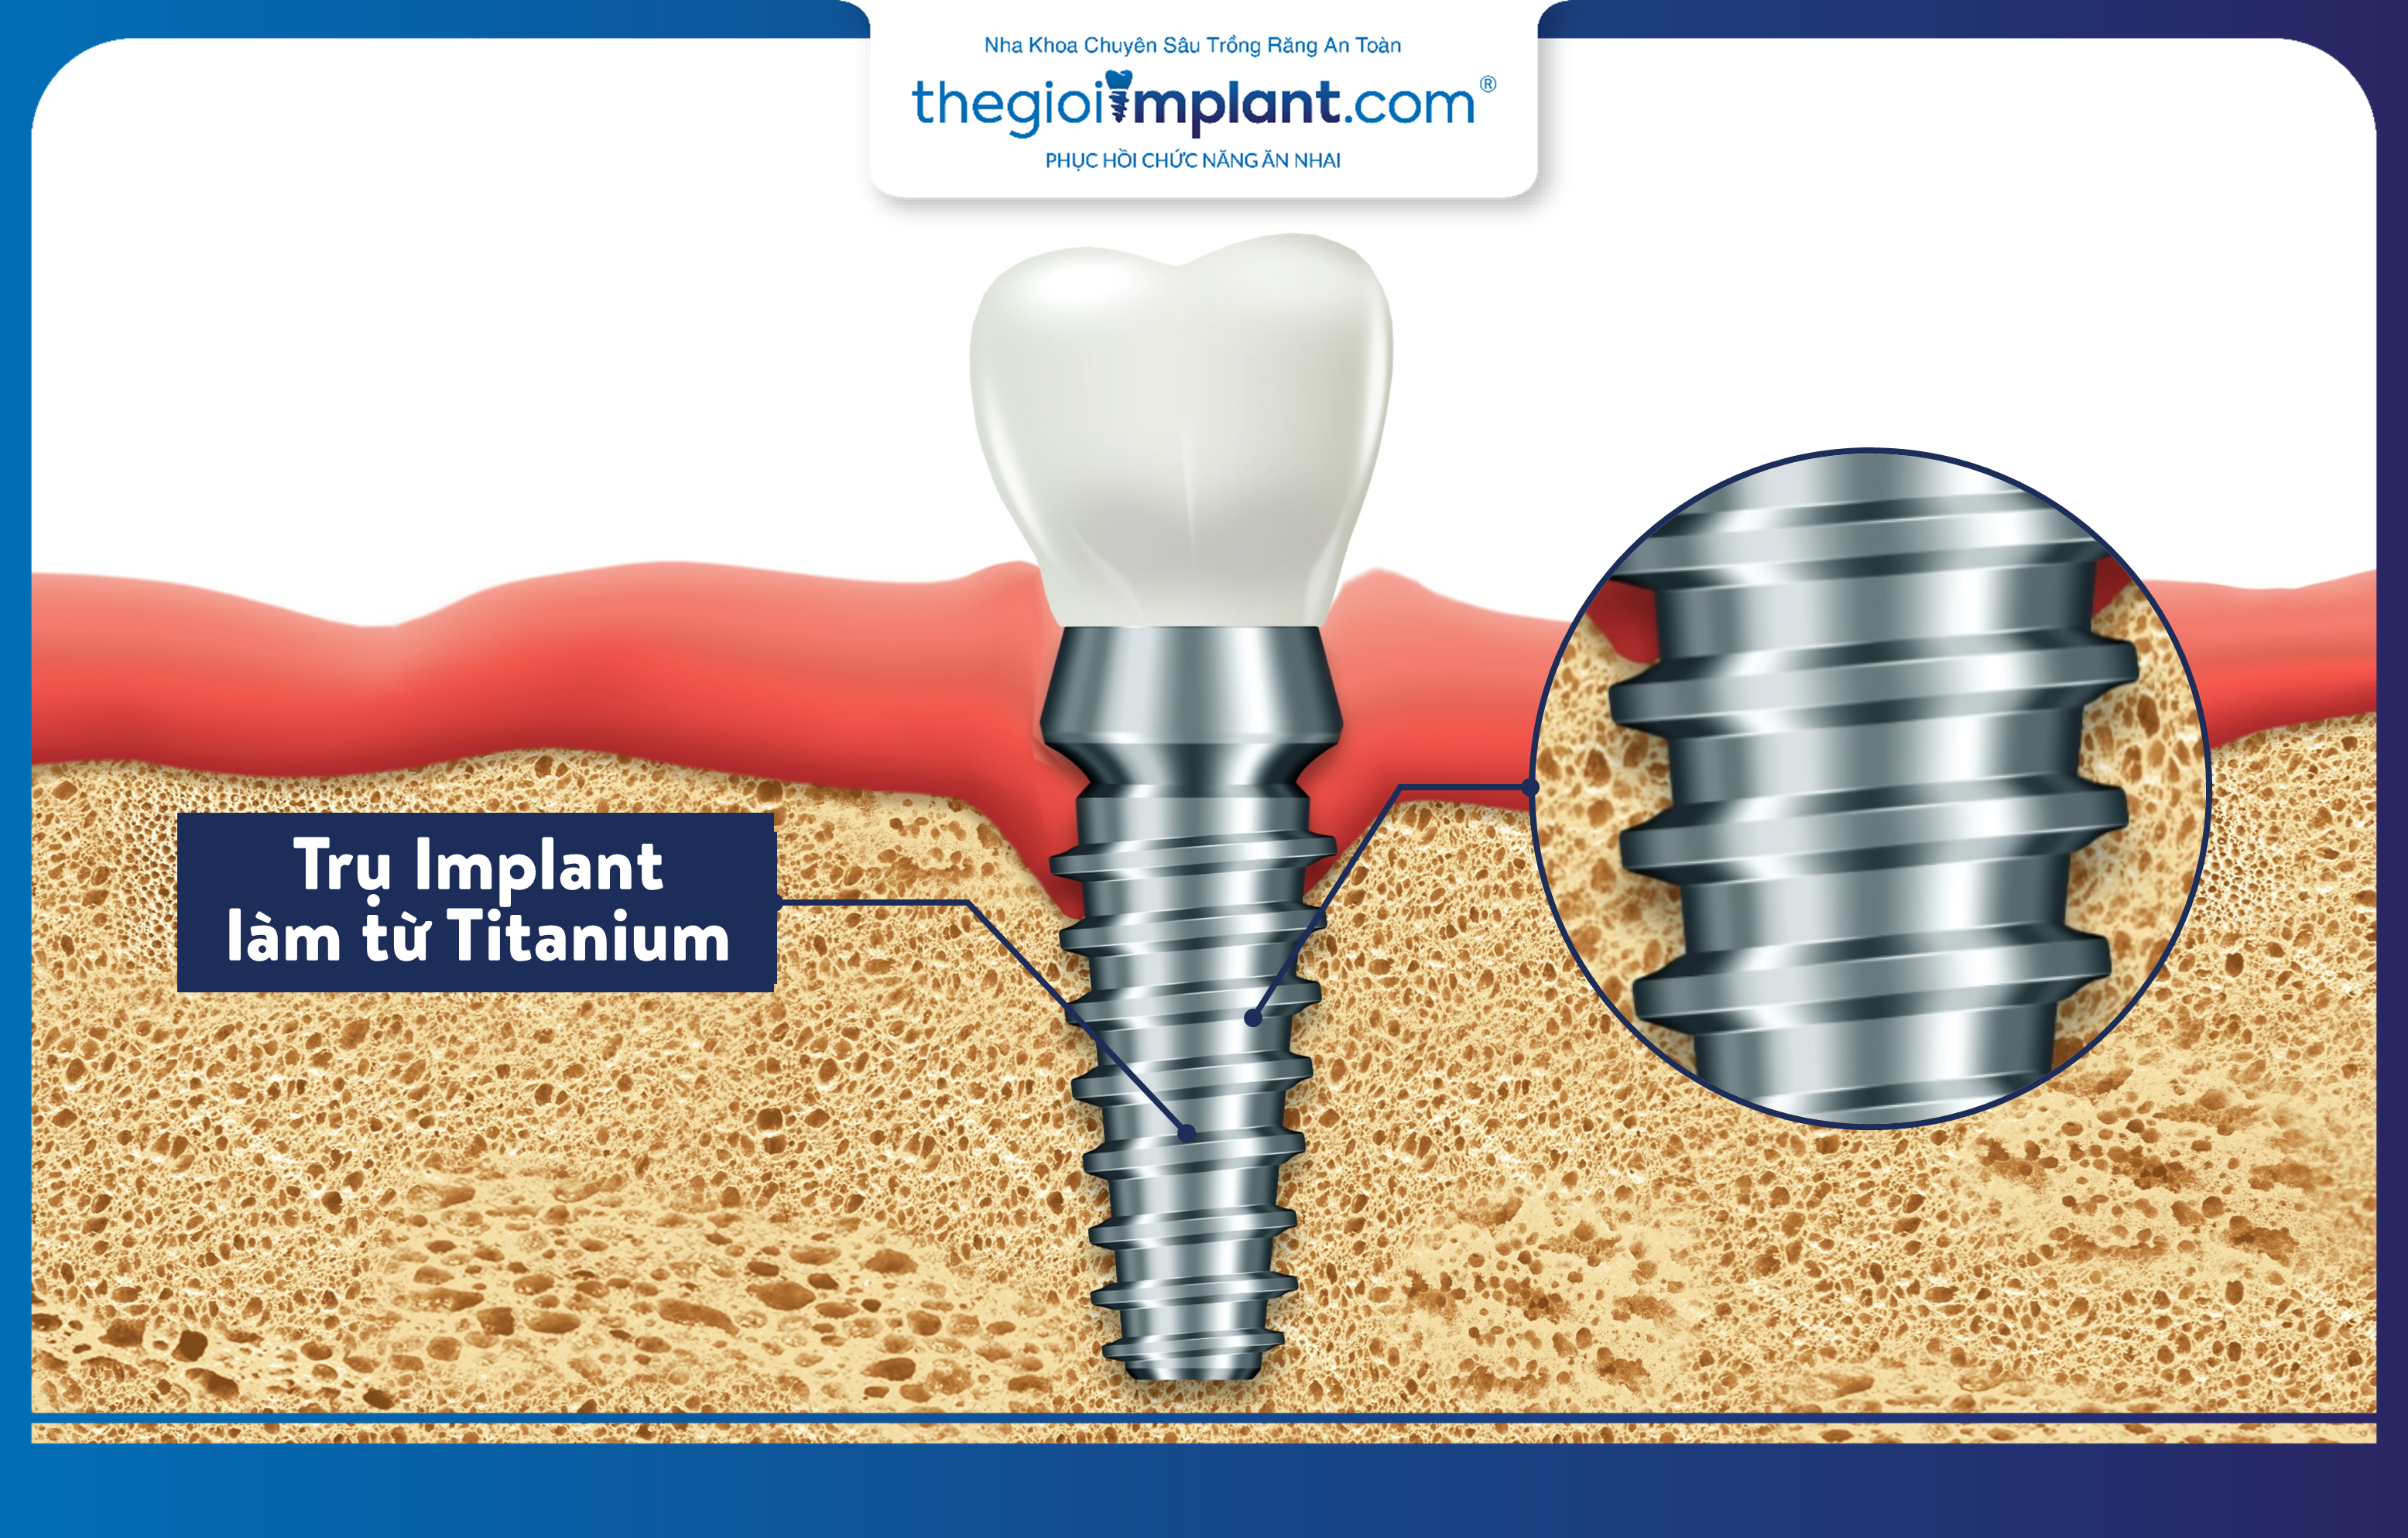 Titanium là vật liệu chế tác trụ Implant, an toàn với cơ thể